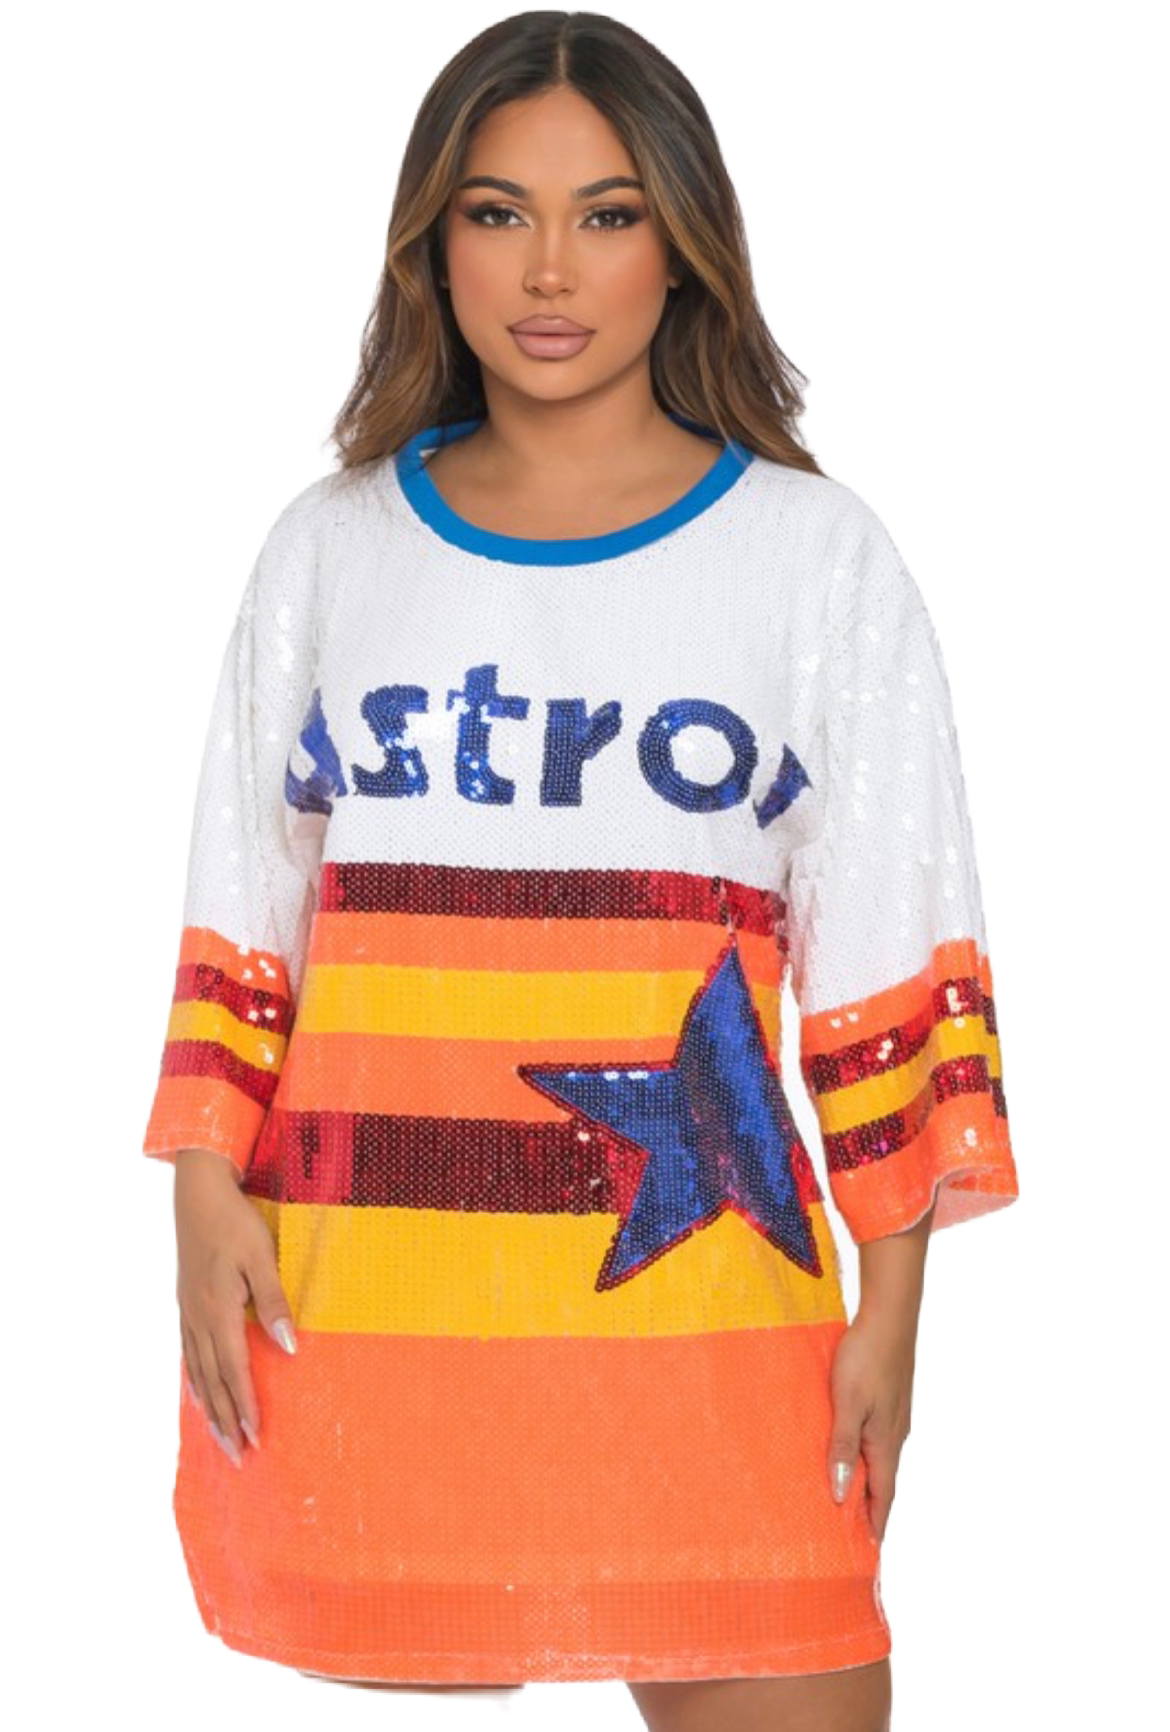 Houston Astros Sequin dress